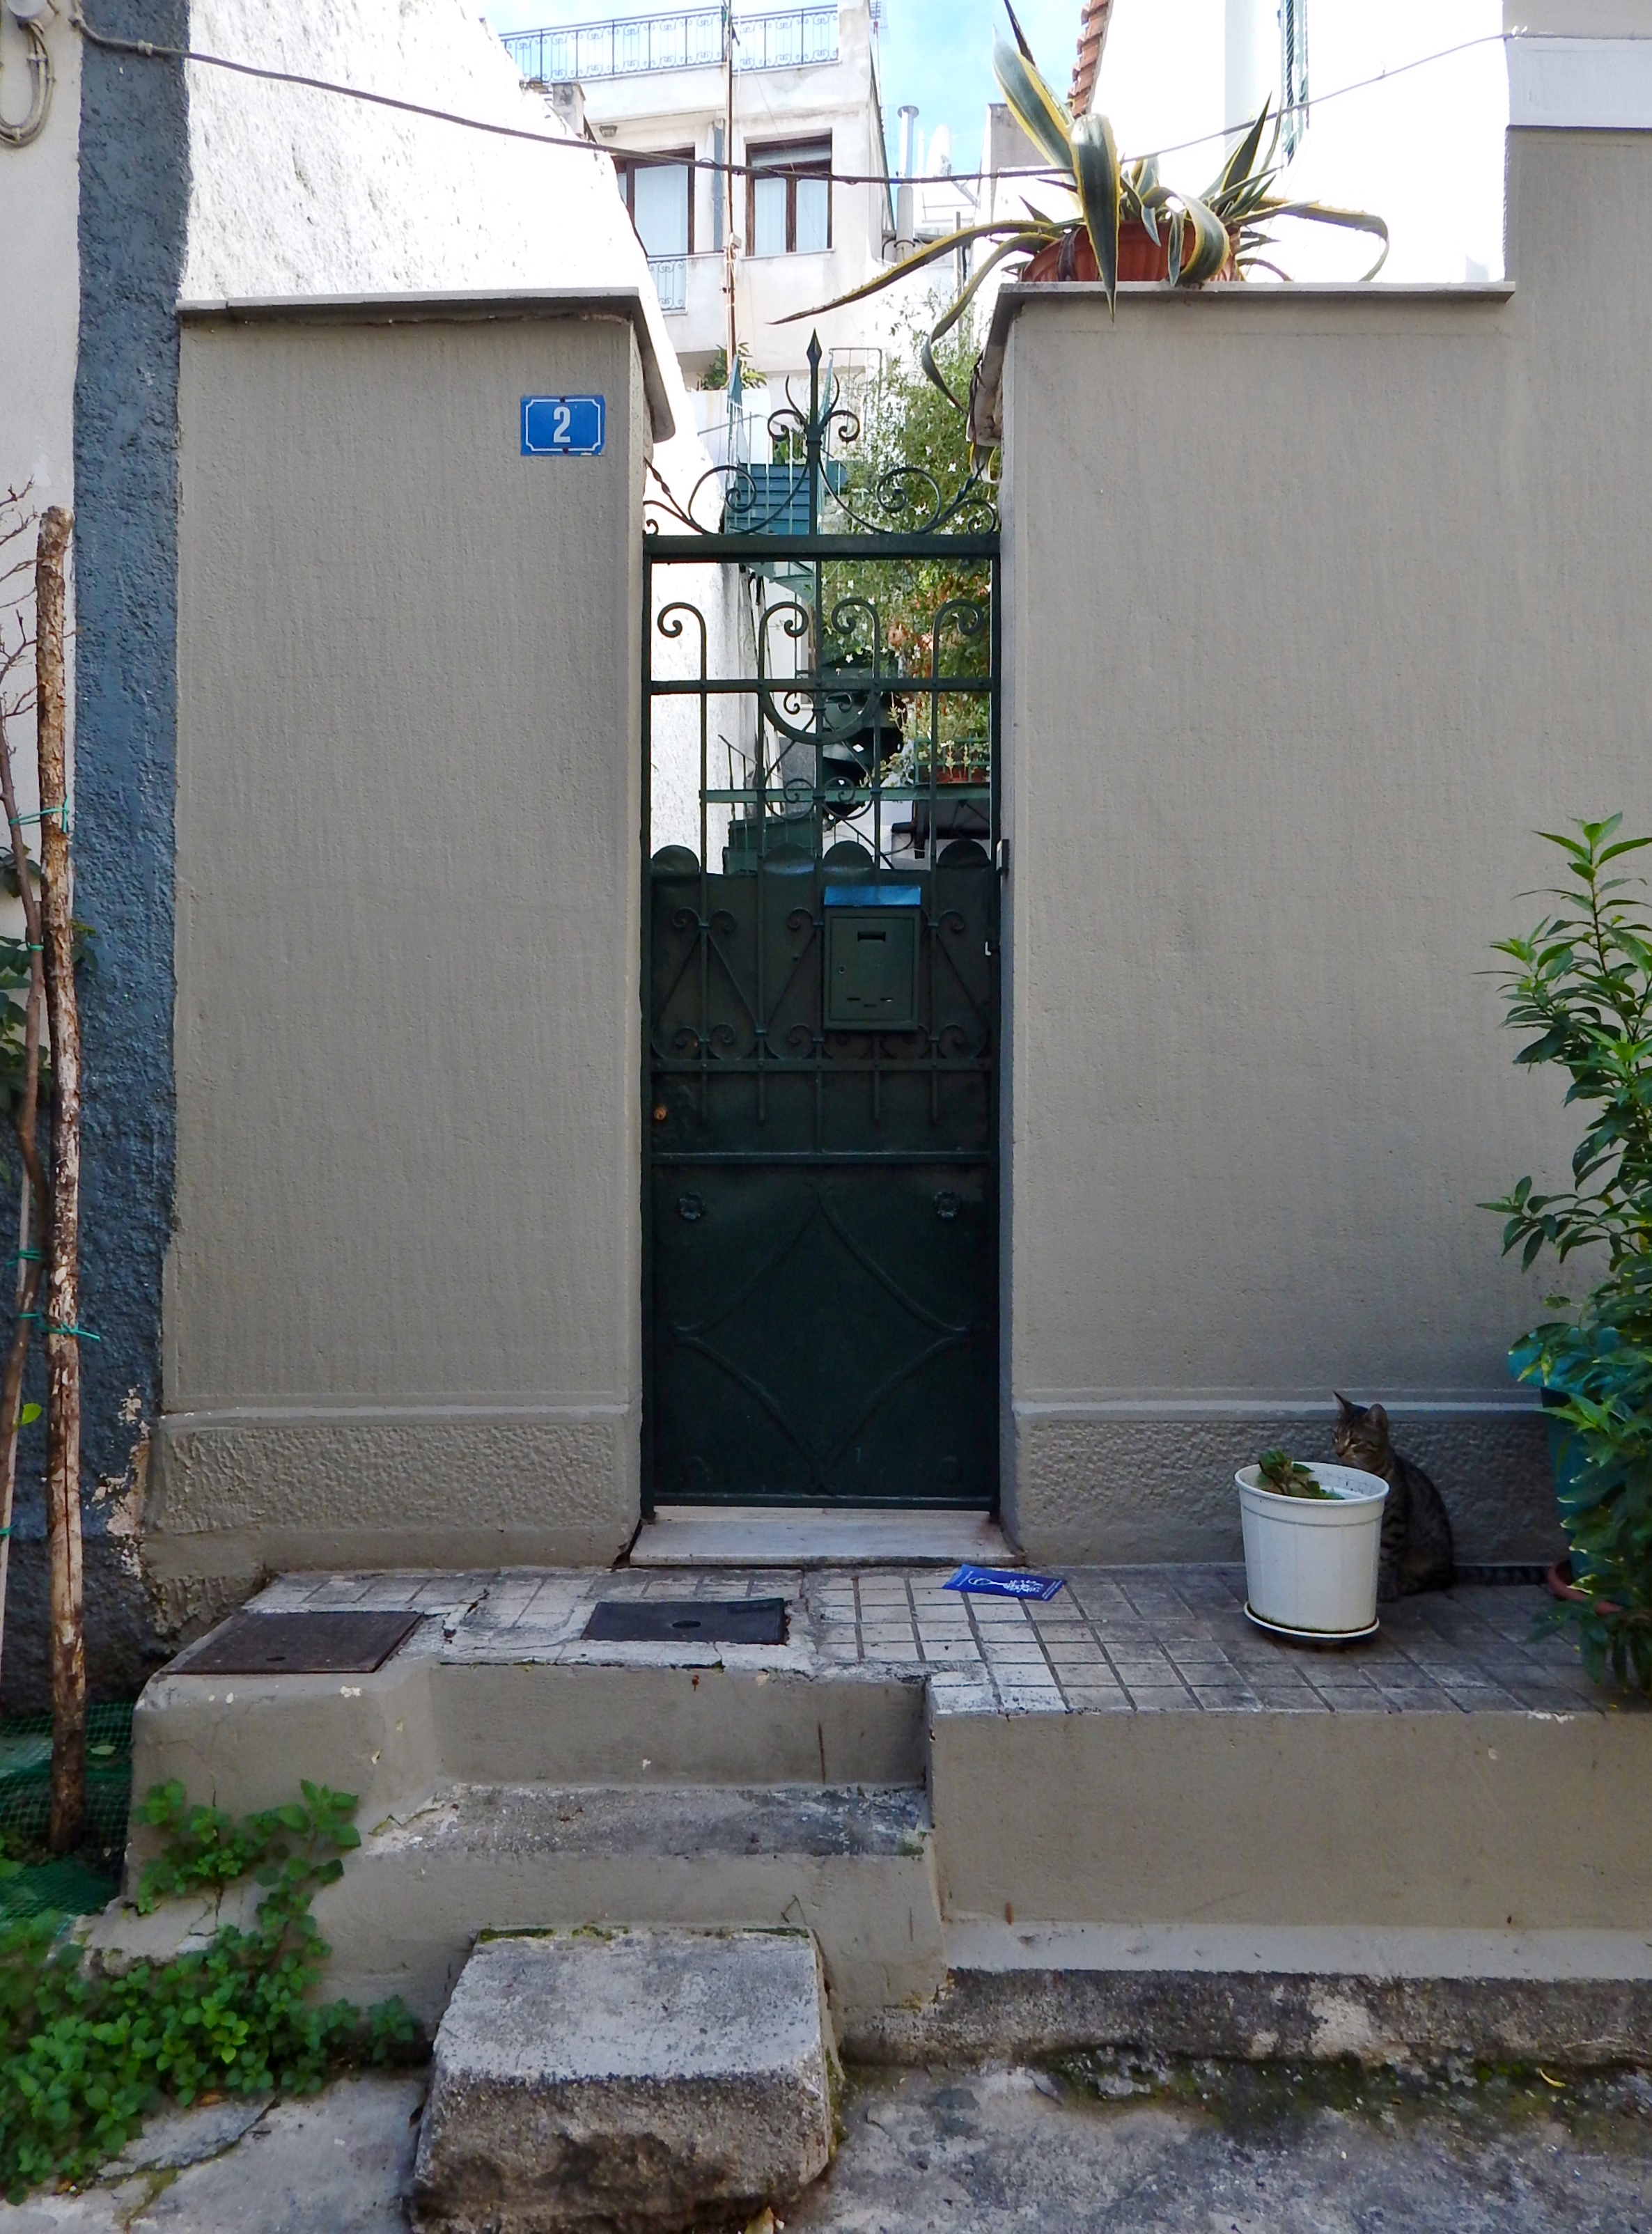 General view of yard door